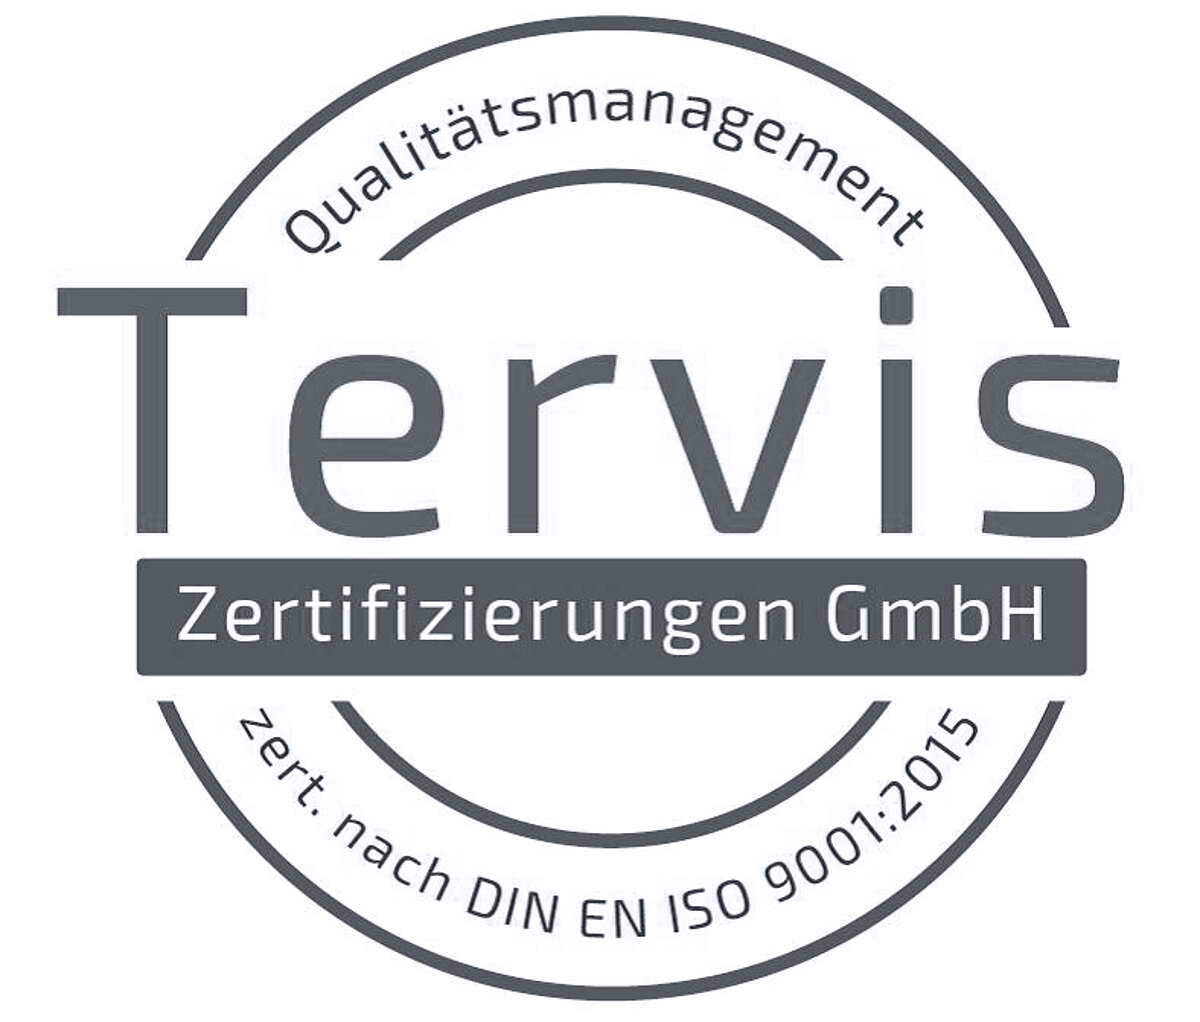 Label de gestion de la qualité certifié selon la norme DIN EN ISO 9001:2015